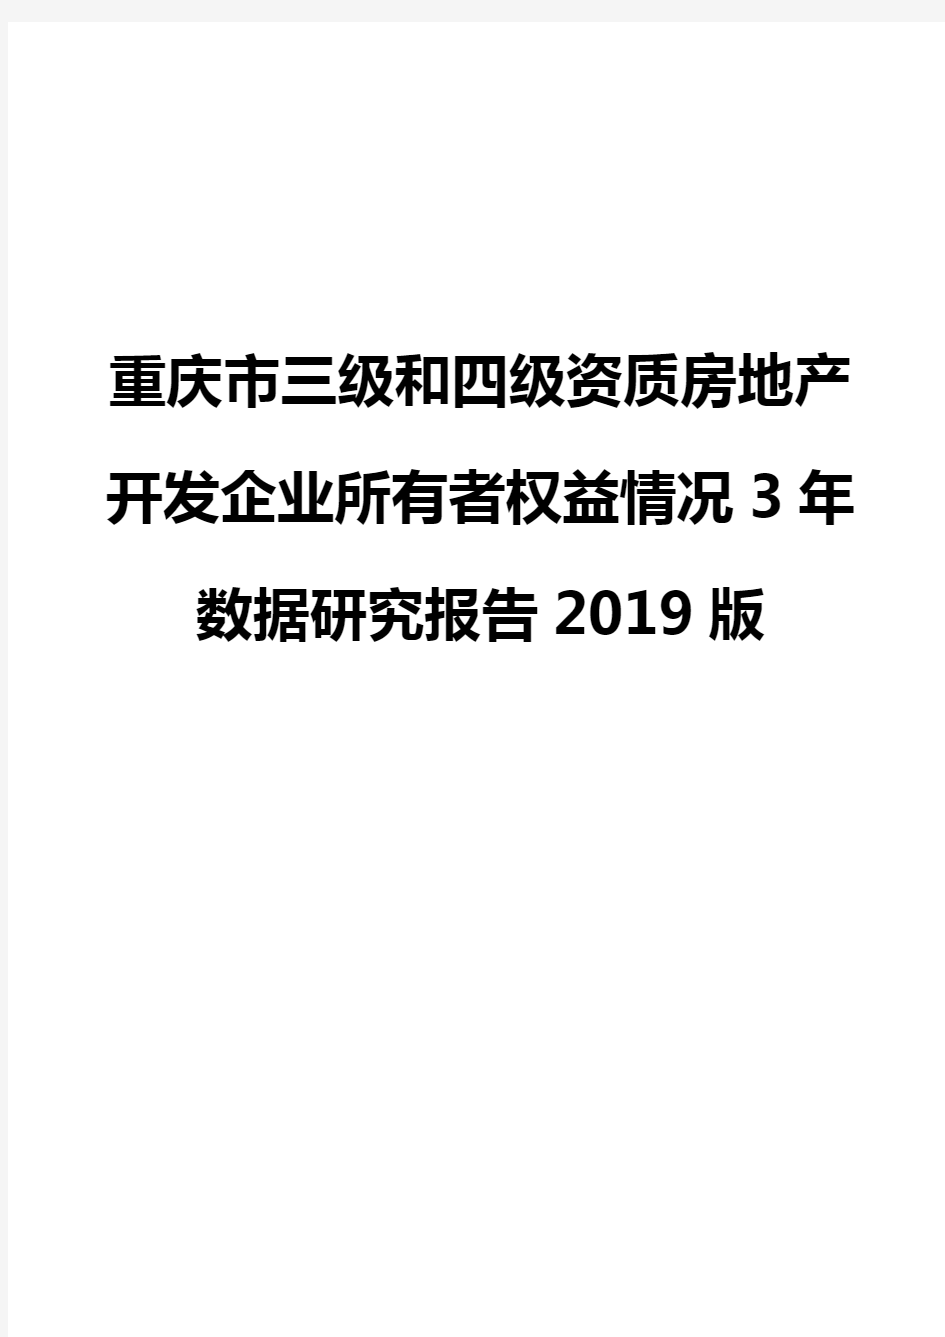 重庆市三级和四级资质房地产开发企业所有者权益情况3年数据研究报告2019版